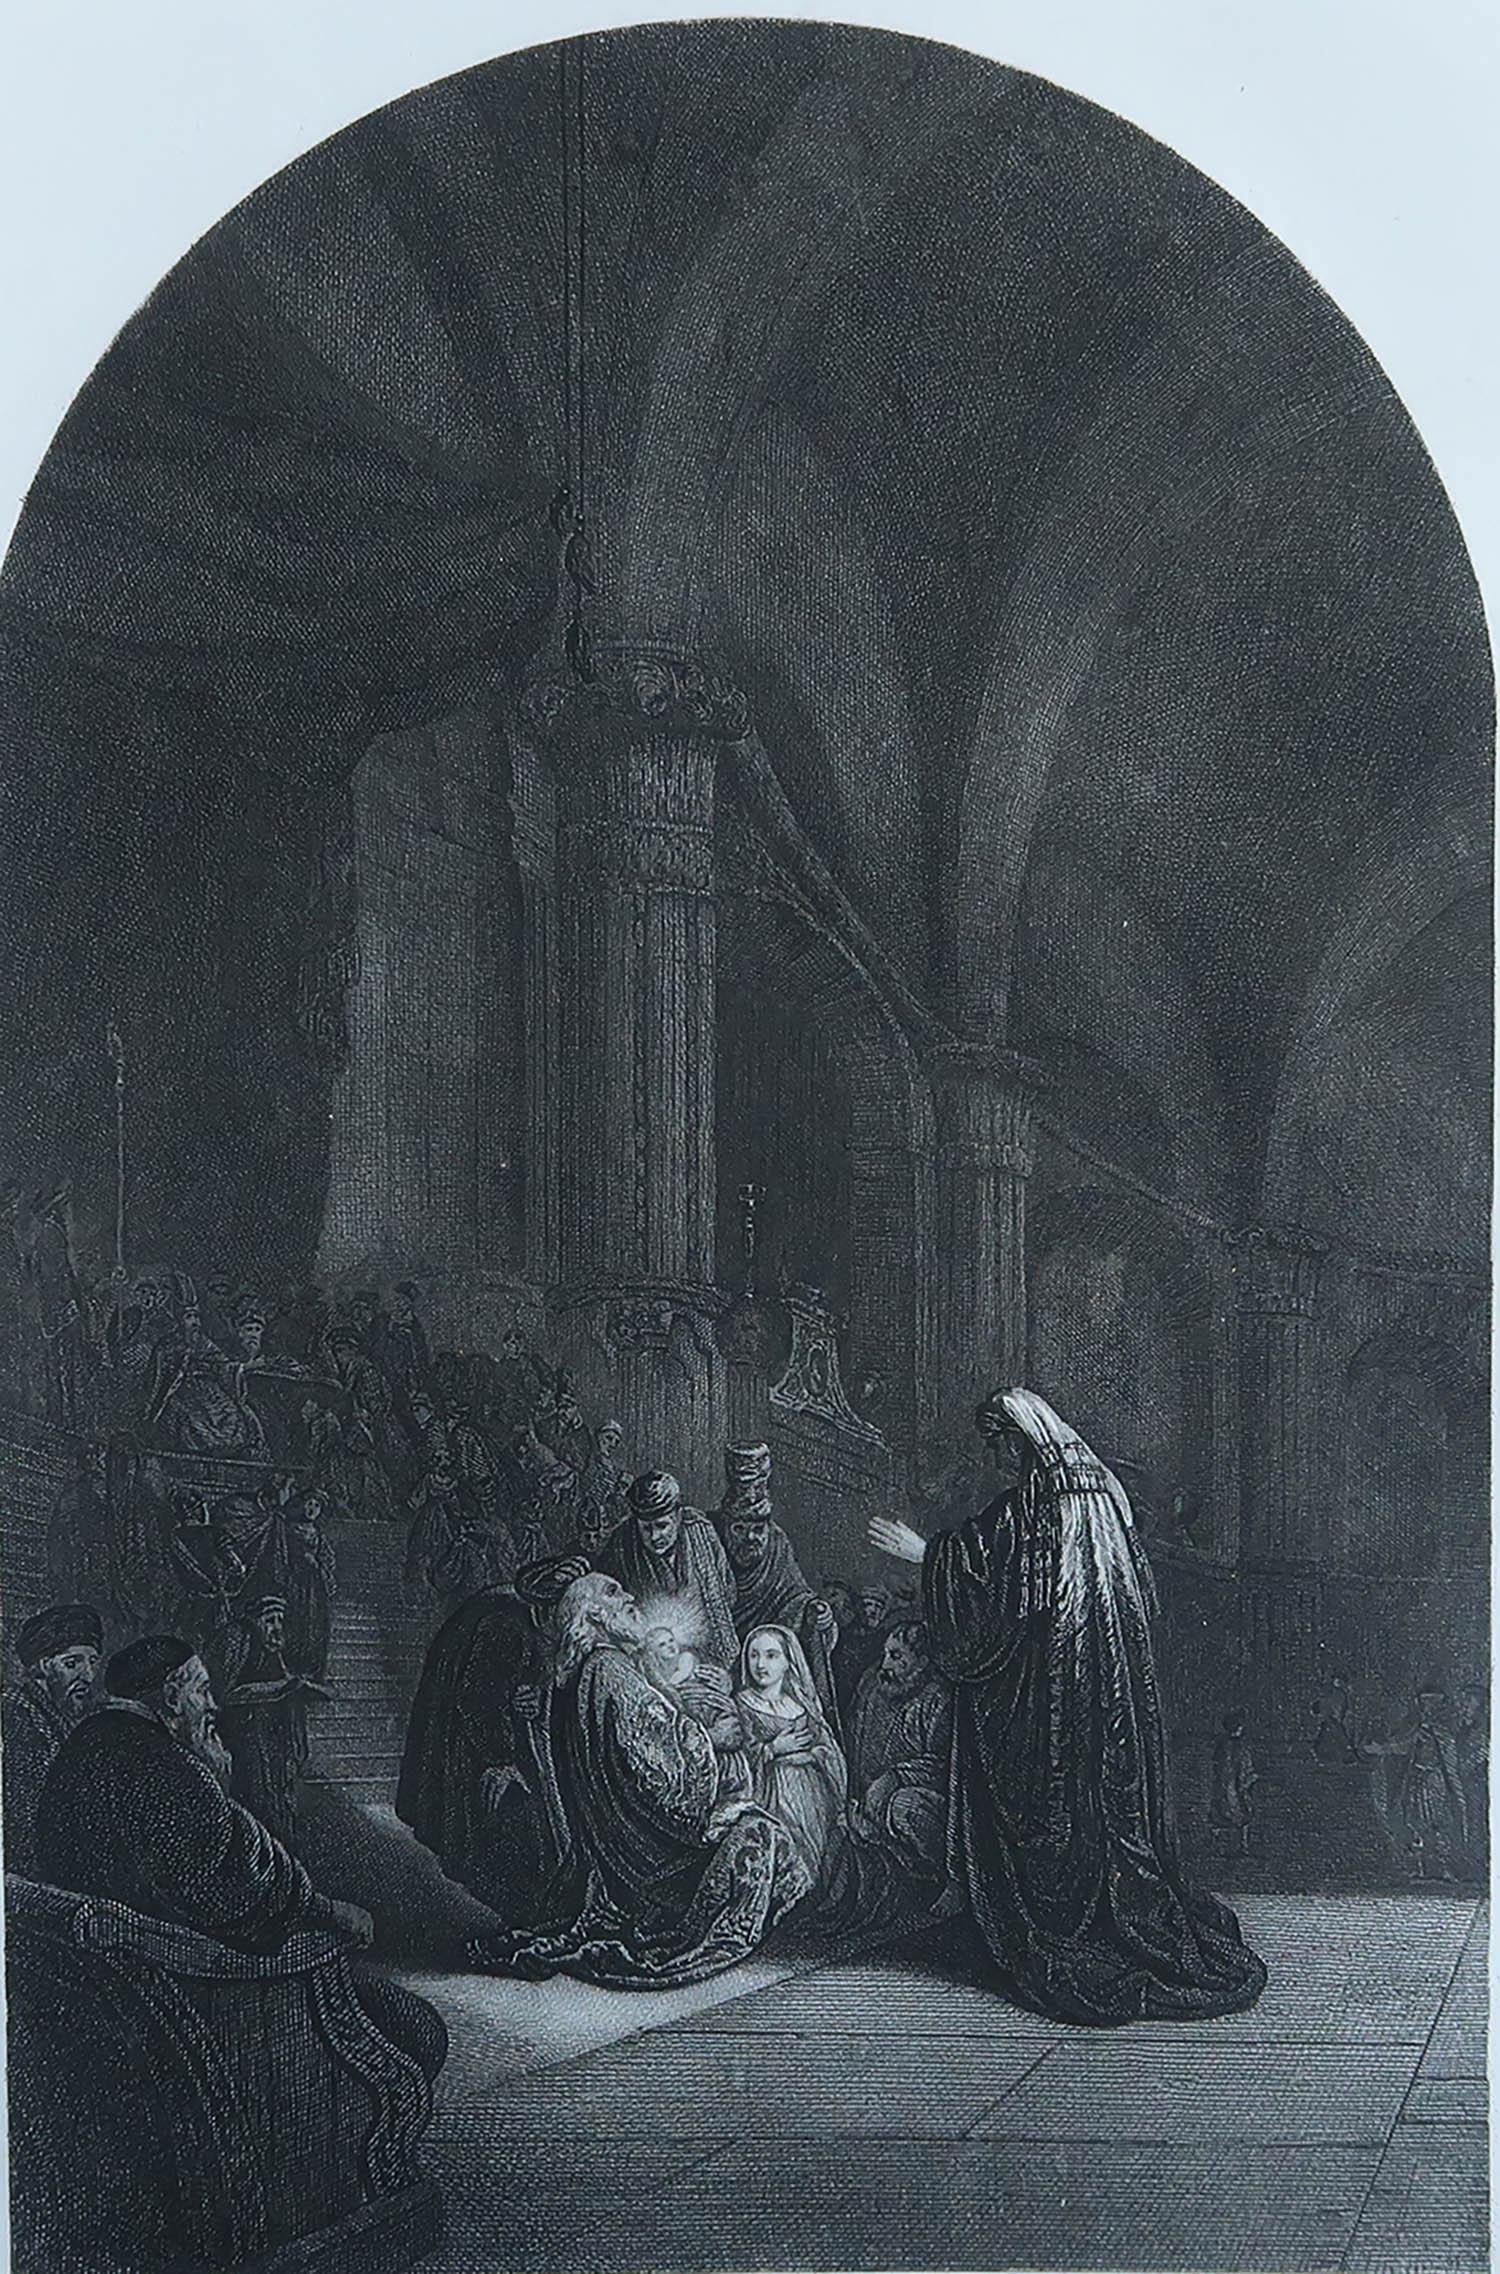 Wunderschönes Bild nach Rembrandt

Feiner Stahlstich. 

Herausgegeben von Blackie & Sons London. C.1850

Ungerahmt.

